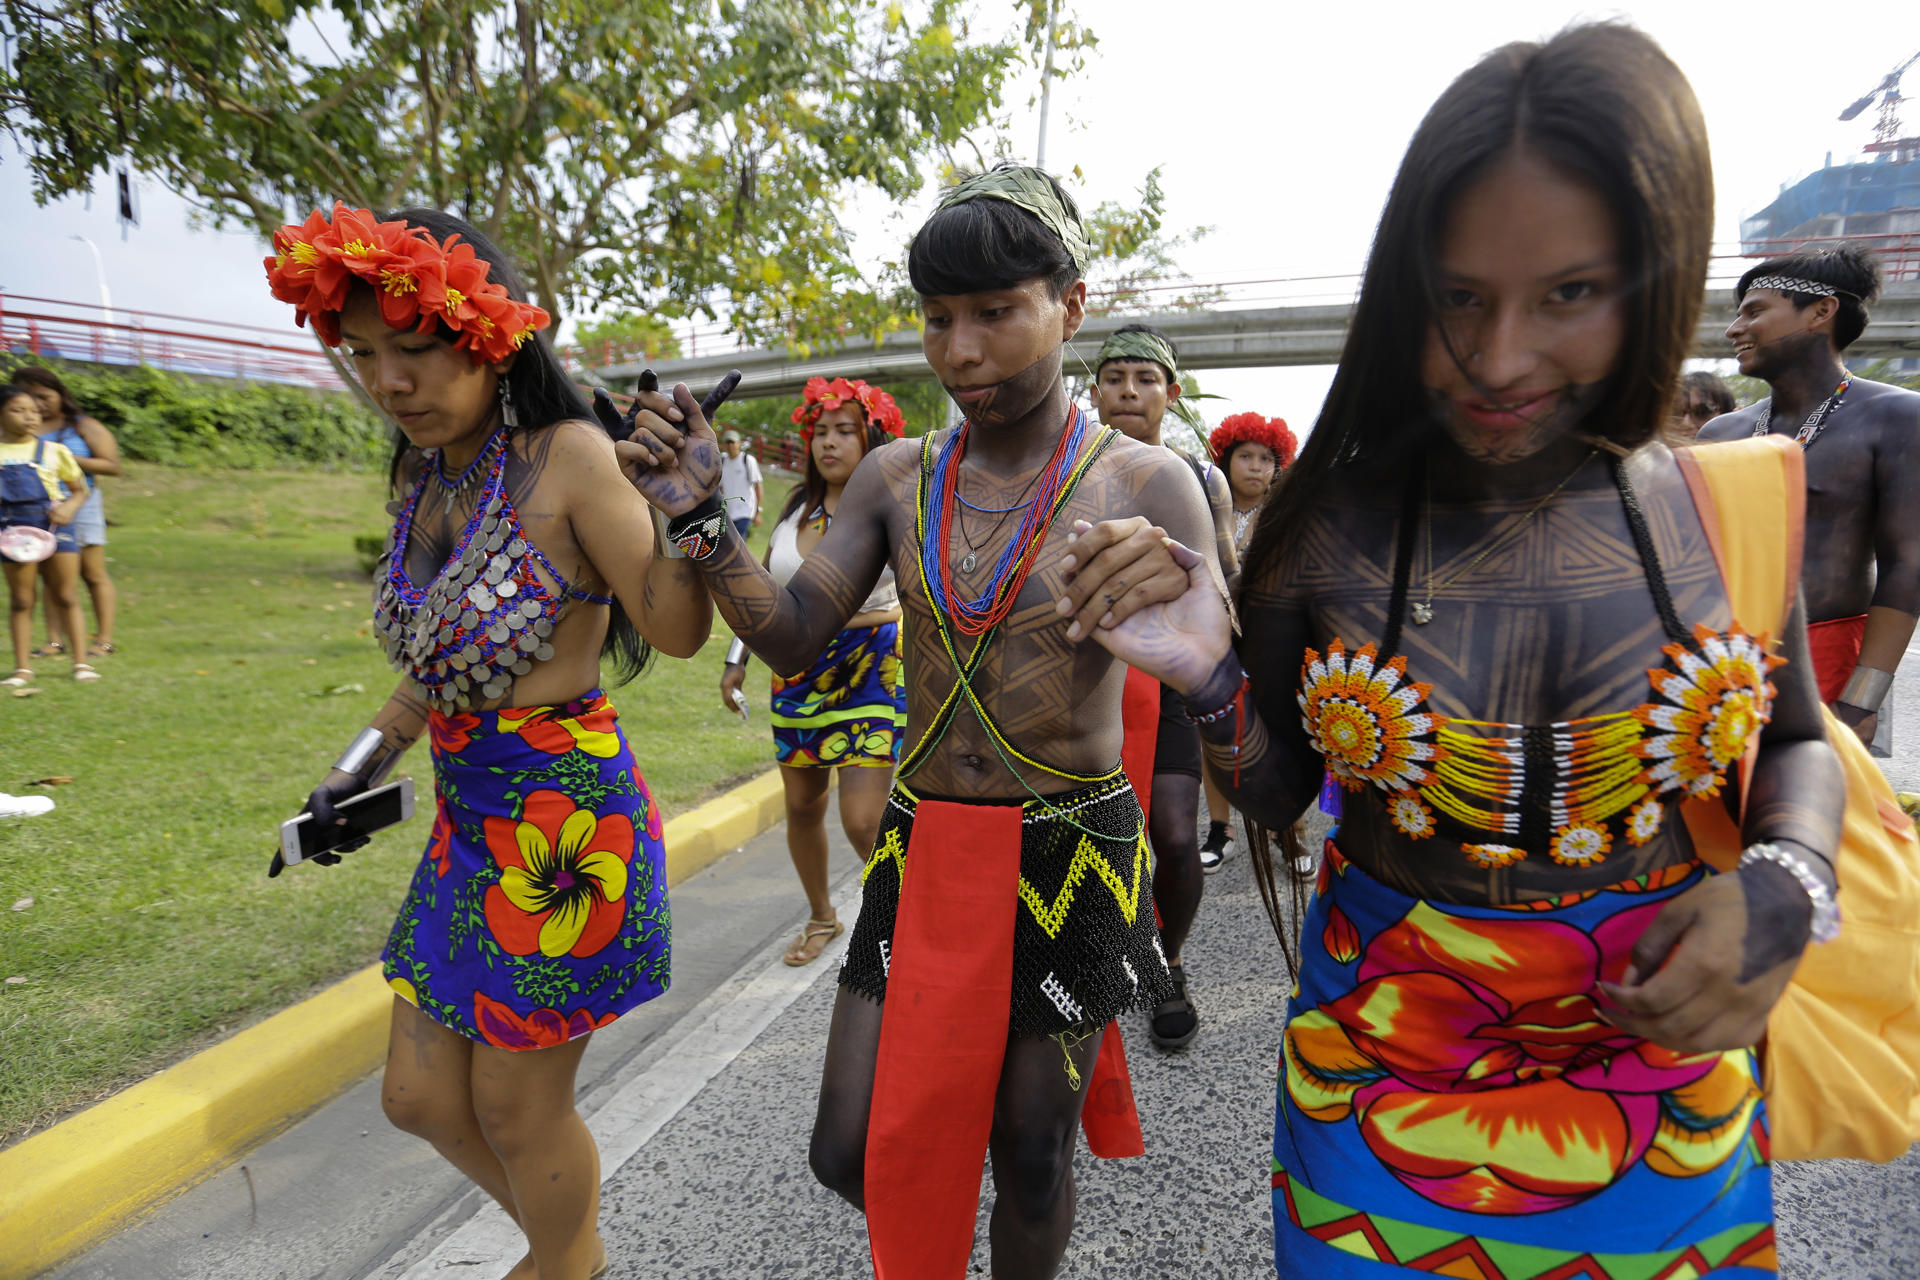 Indígenas de la comunidad Ngäbe Buglé fueron registrados este sábado, 16 de marzo, al celebrar el aniversario de la creación de su comarca  en 1997, en el Paseo Marítimo, en Ciudad de Panamá (Panamá). EFE/Carlos Lemos